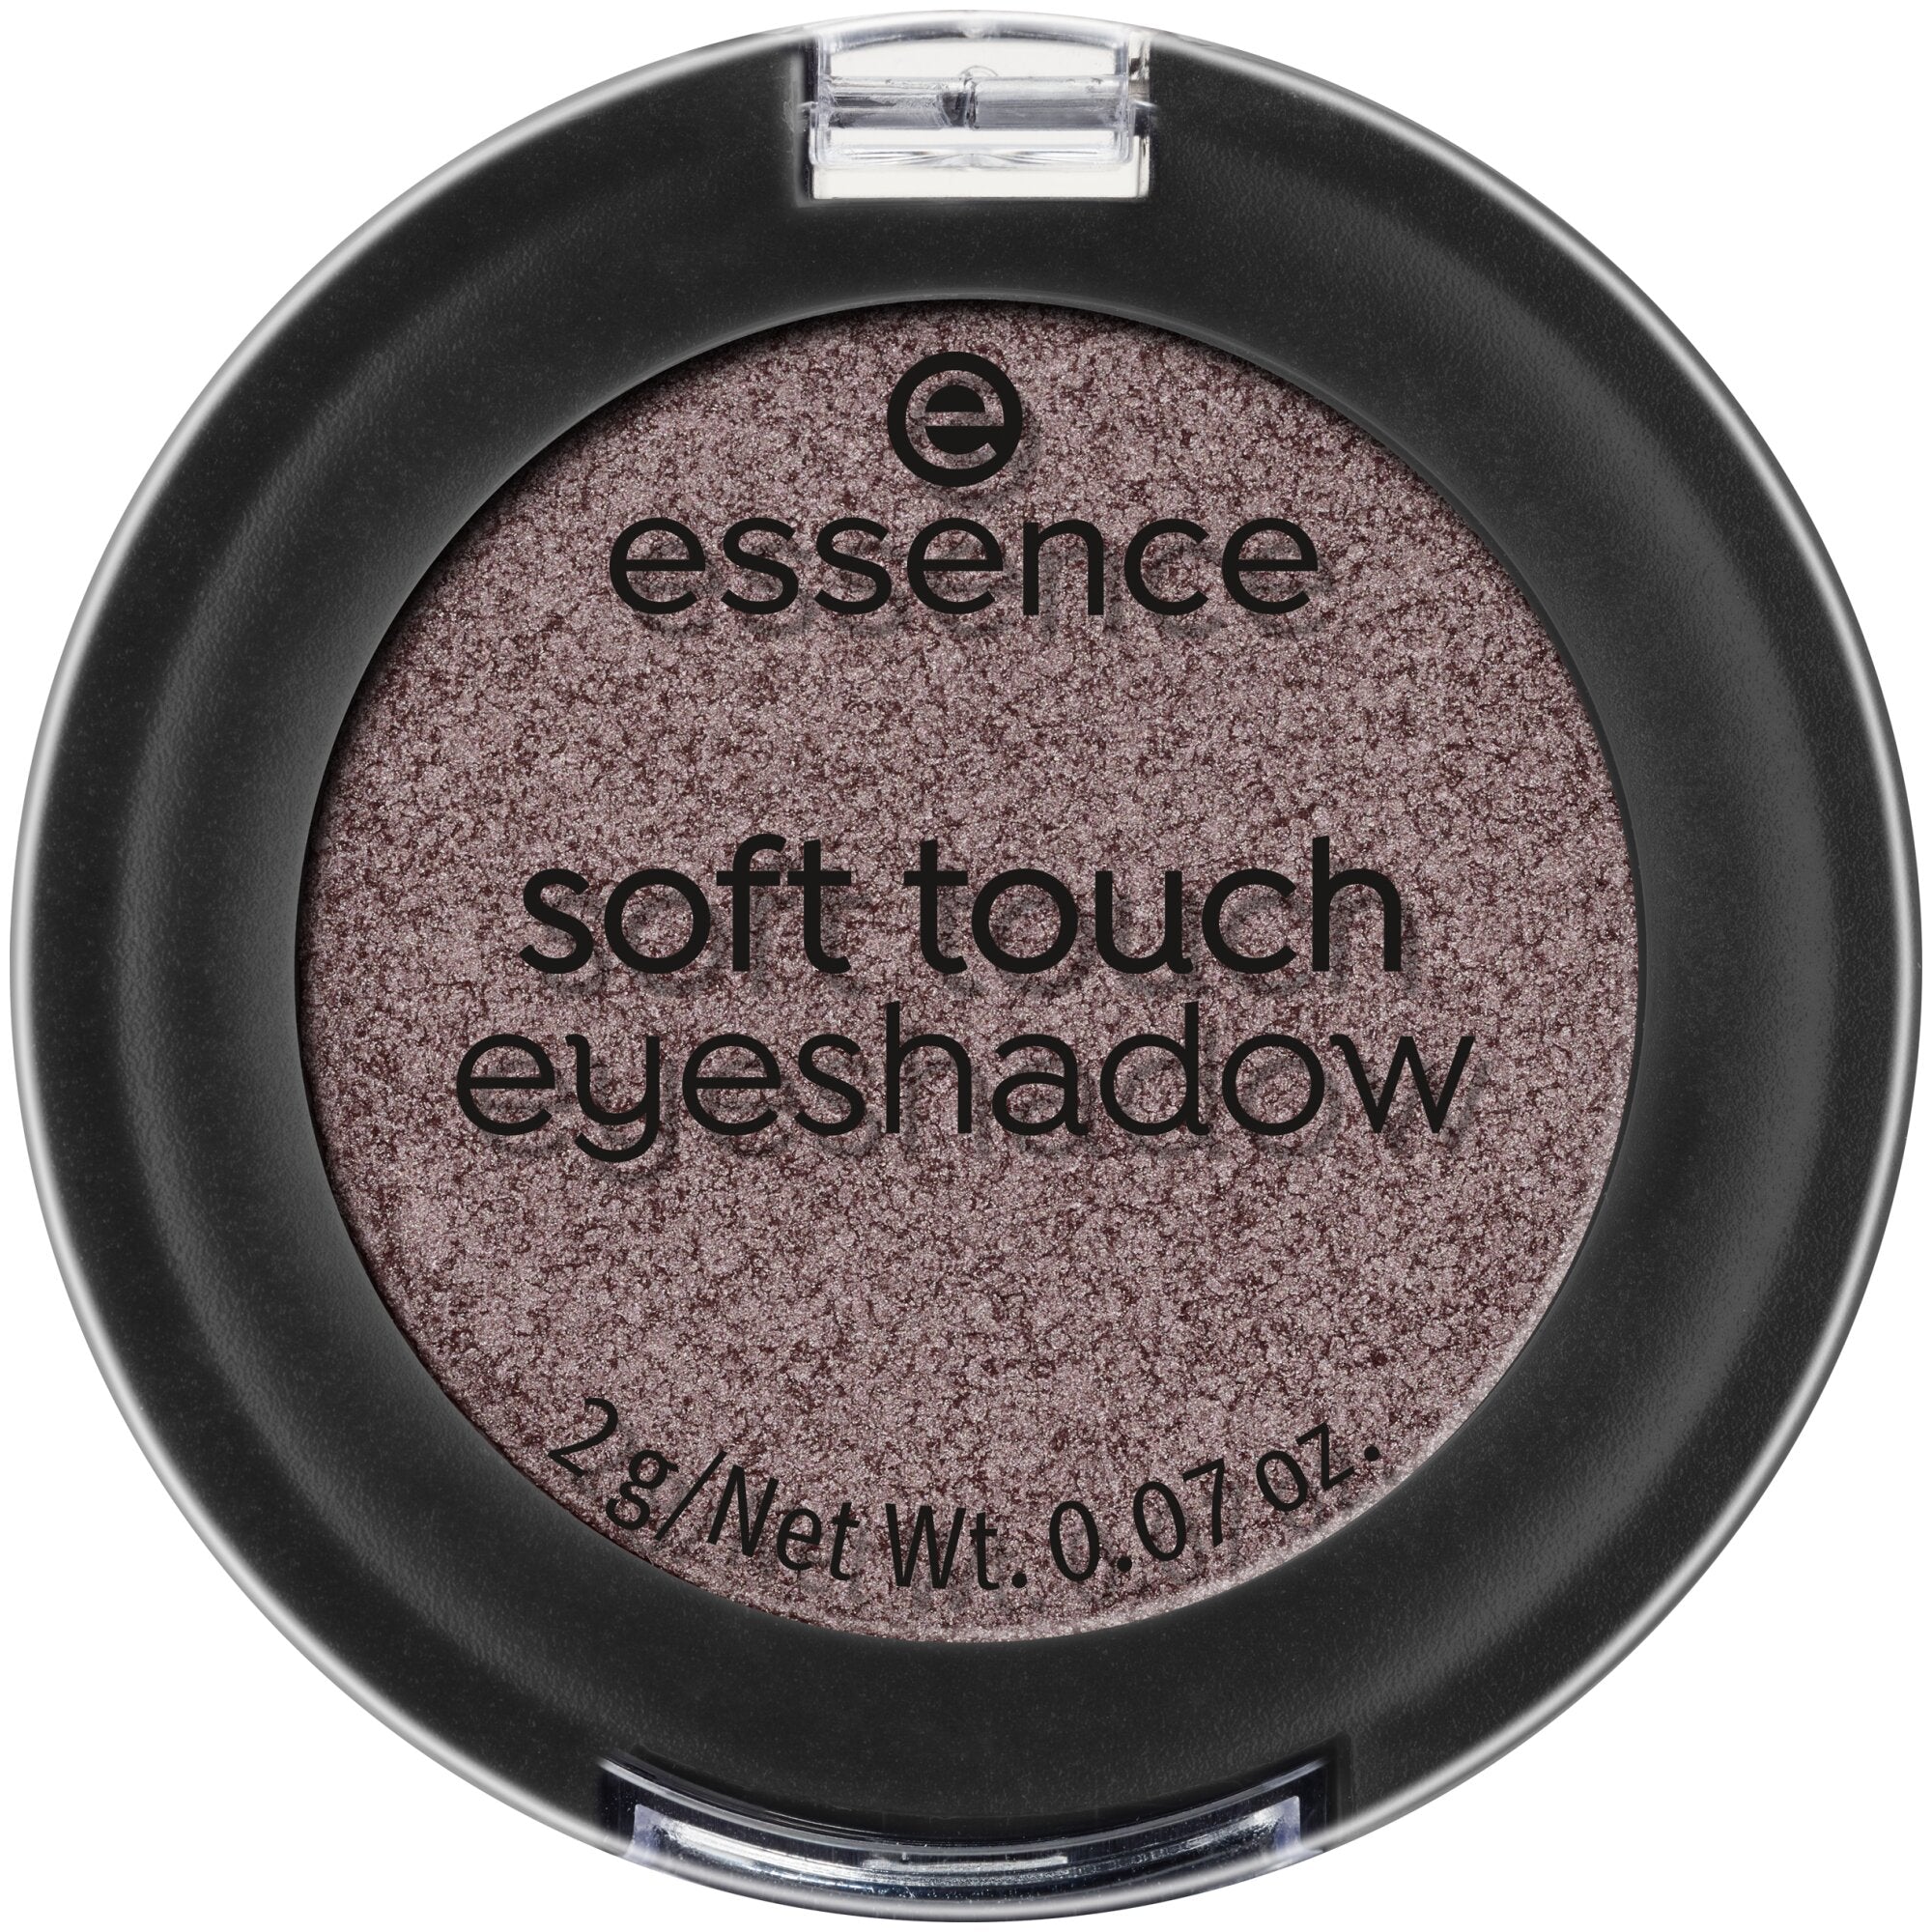 Essence Soft Touch Eyeshadow 2g Eternity Closed